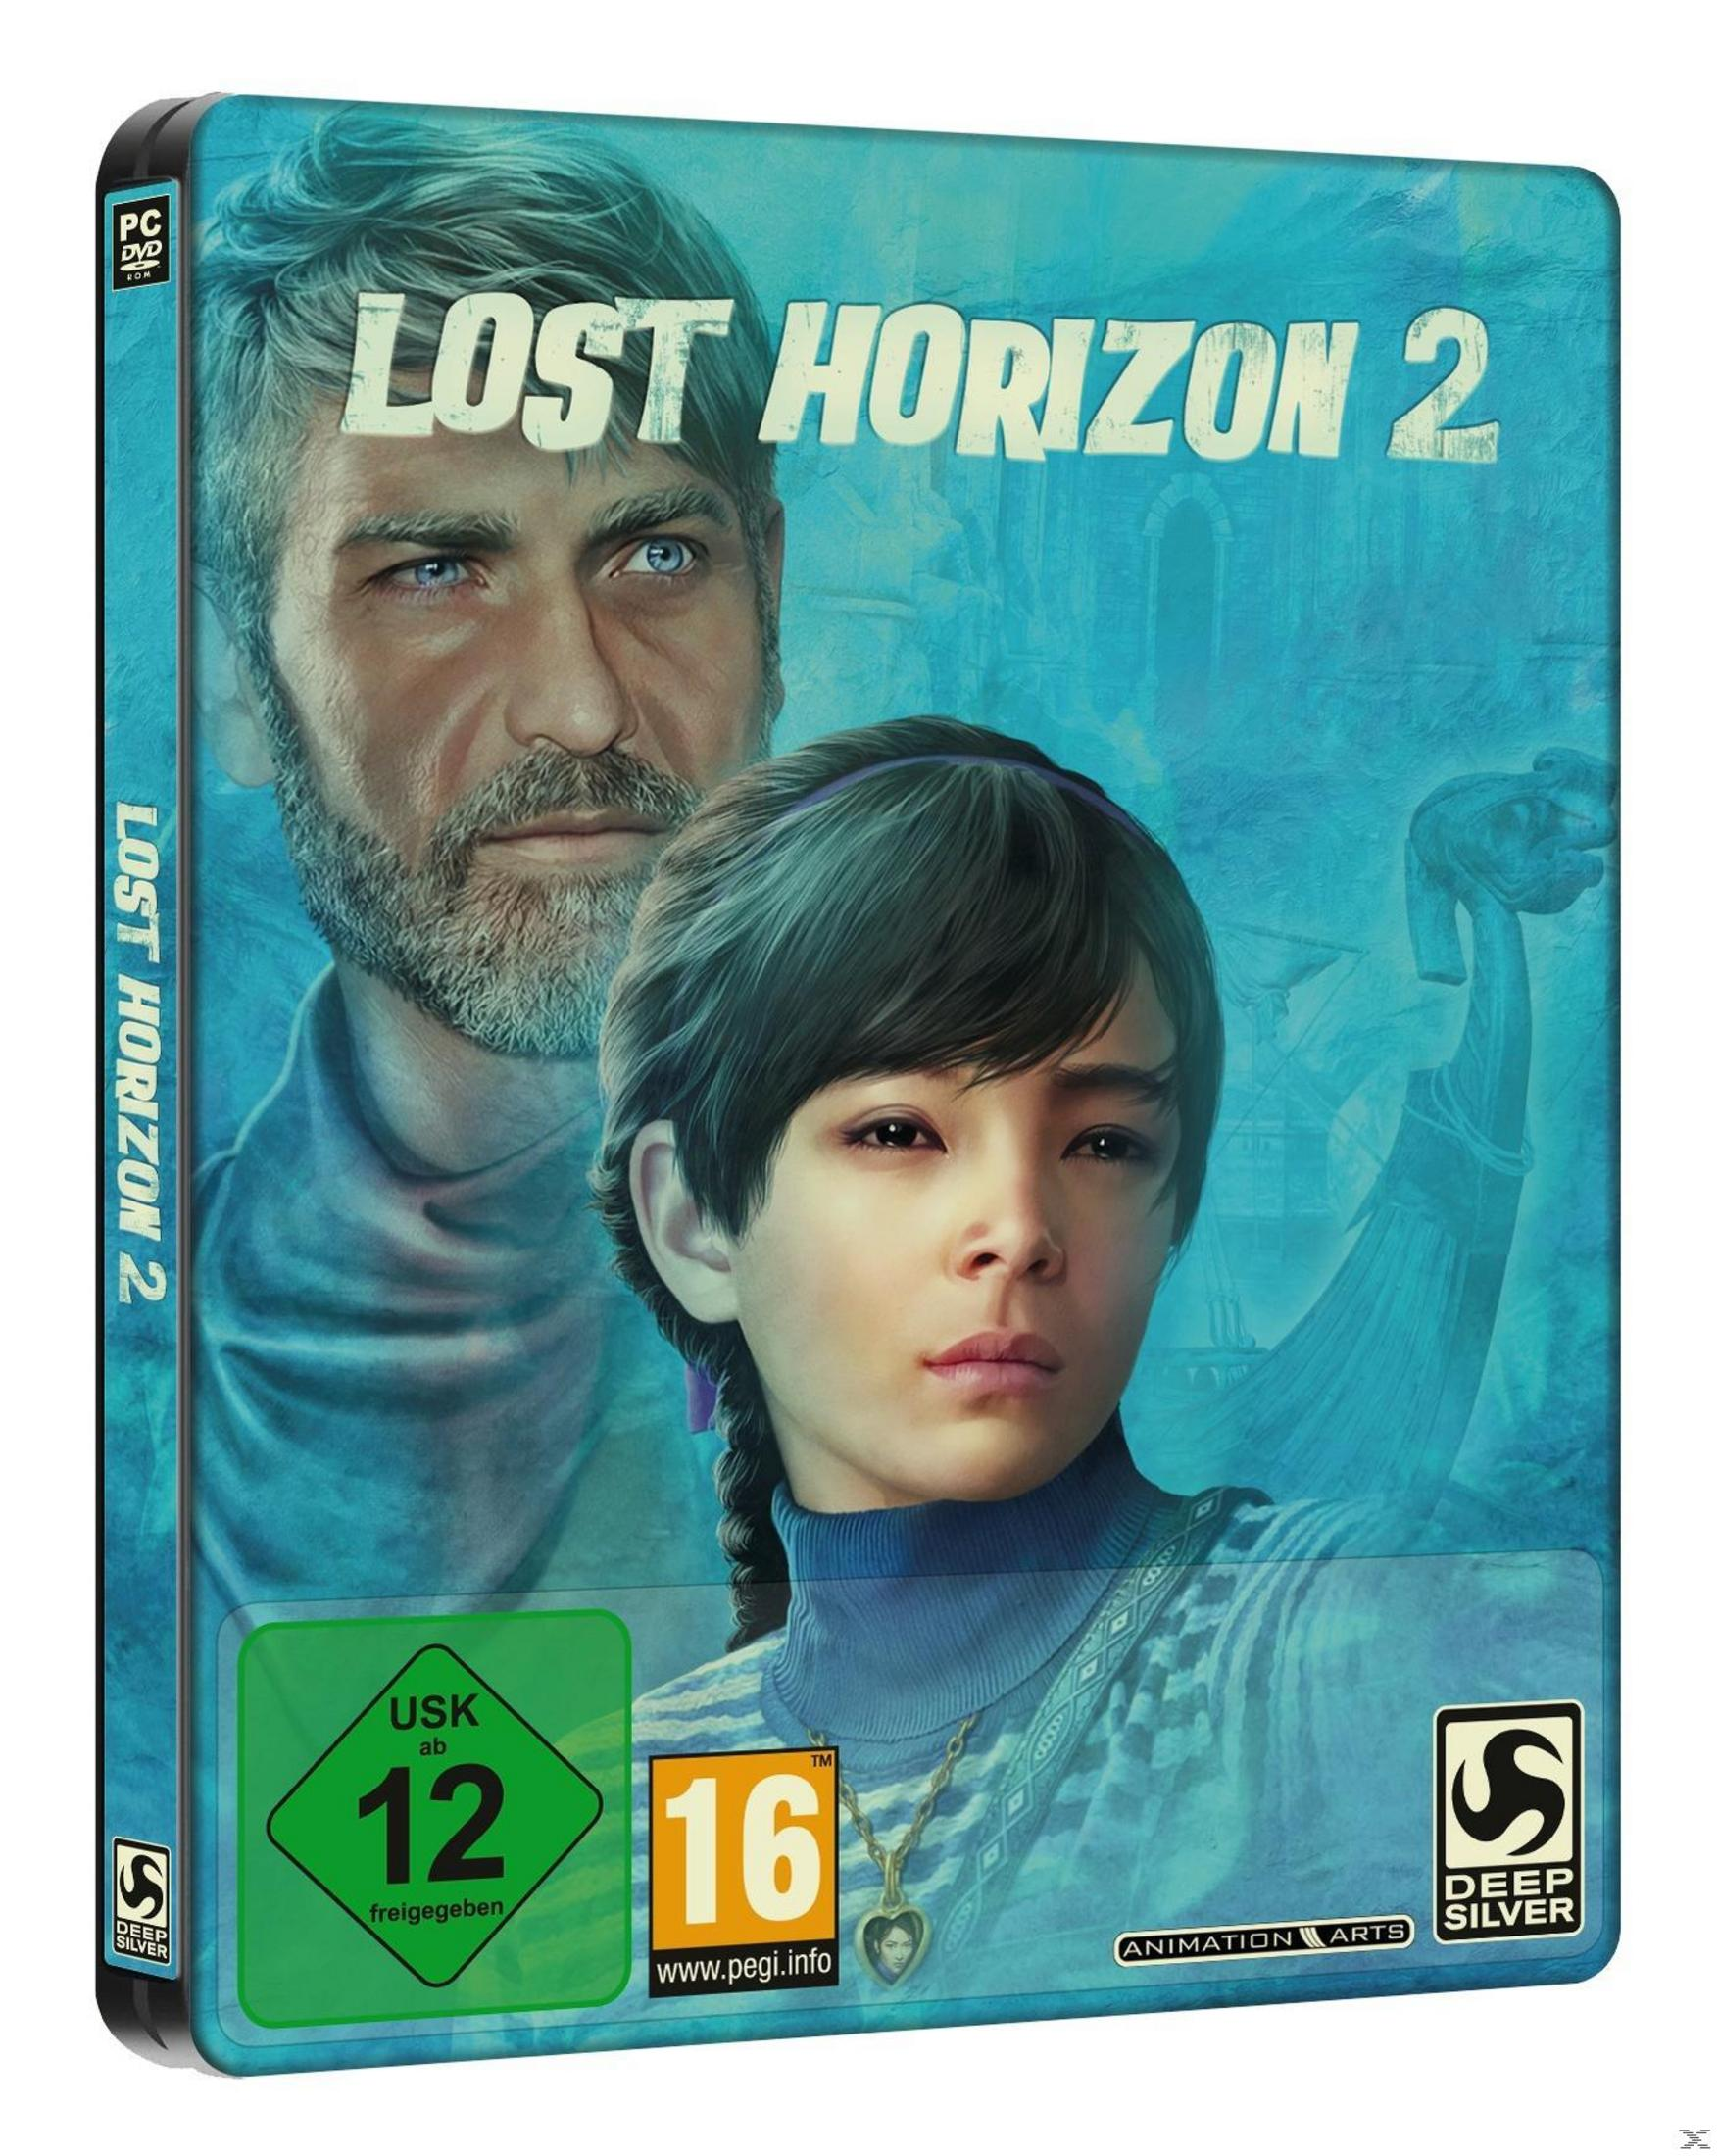 Lost Horizon 2 - Limitierte Steelbook Erstauflage [PC] 